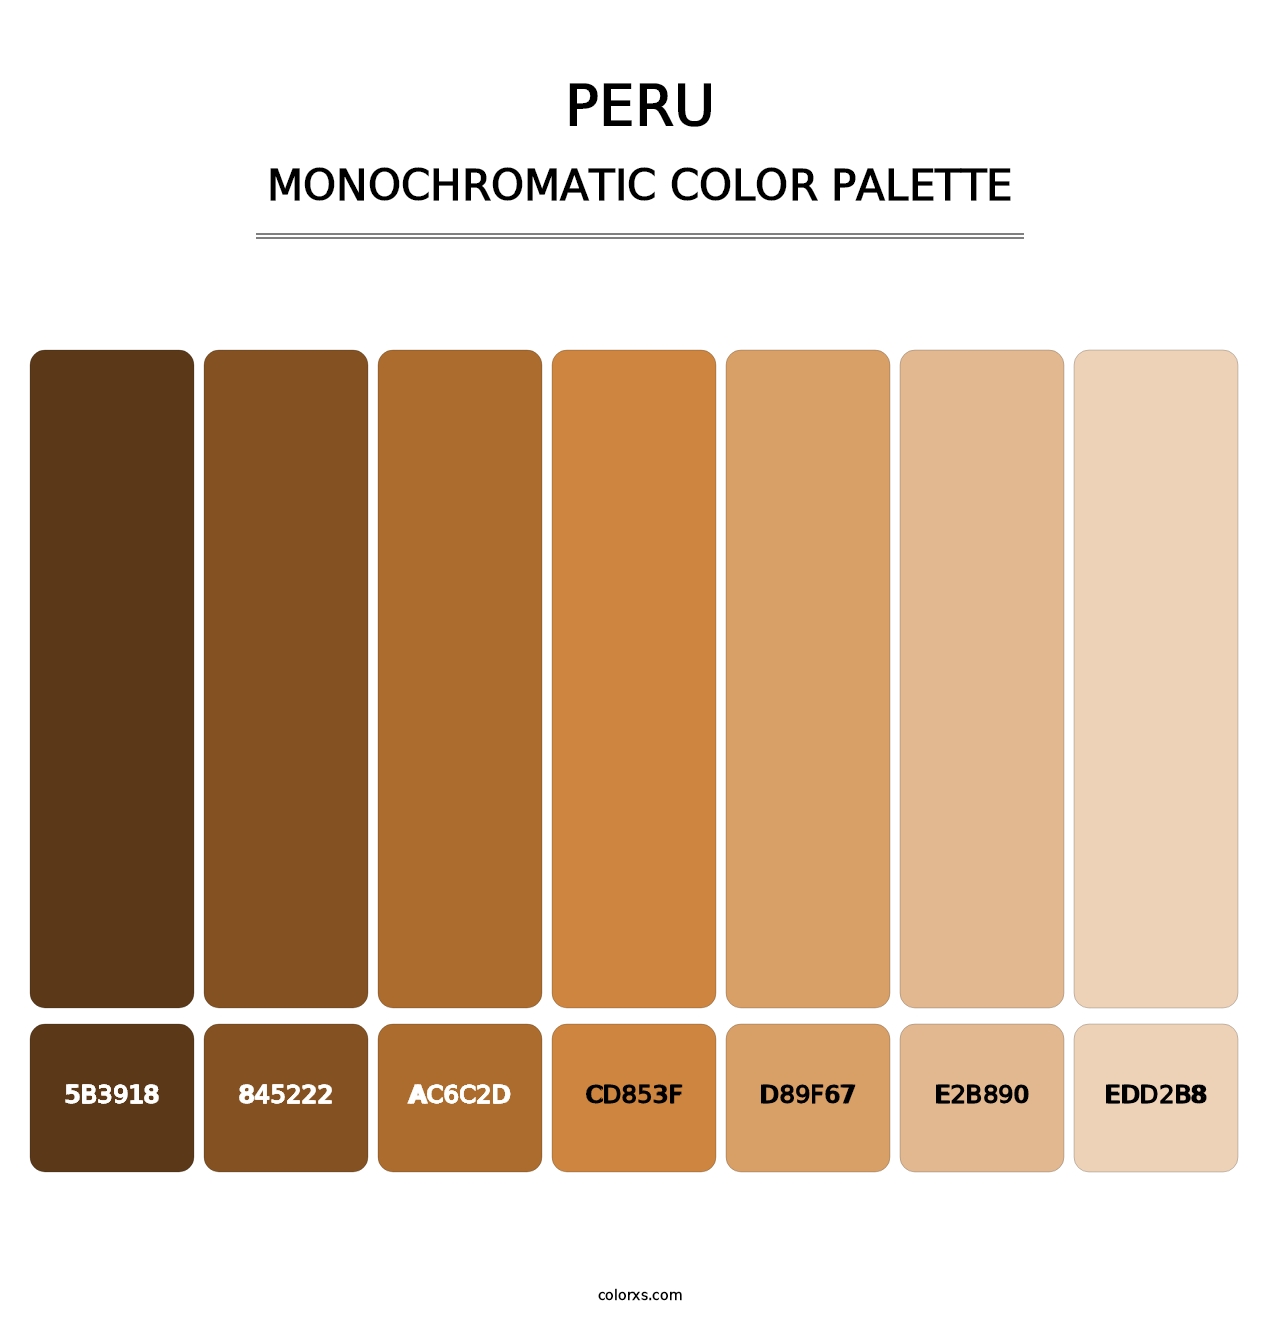 Peru - Monochromatic Color Palette